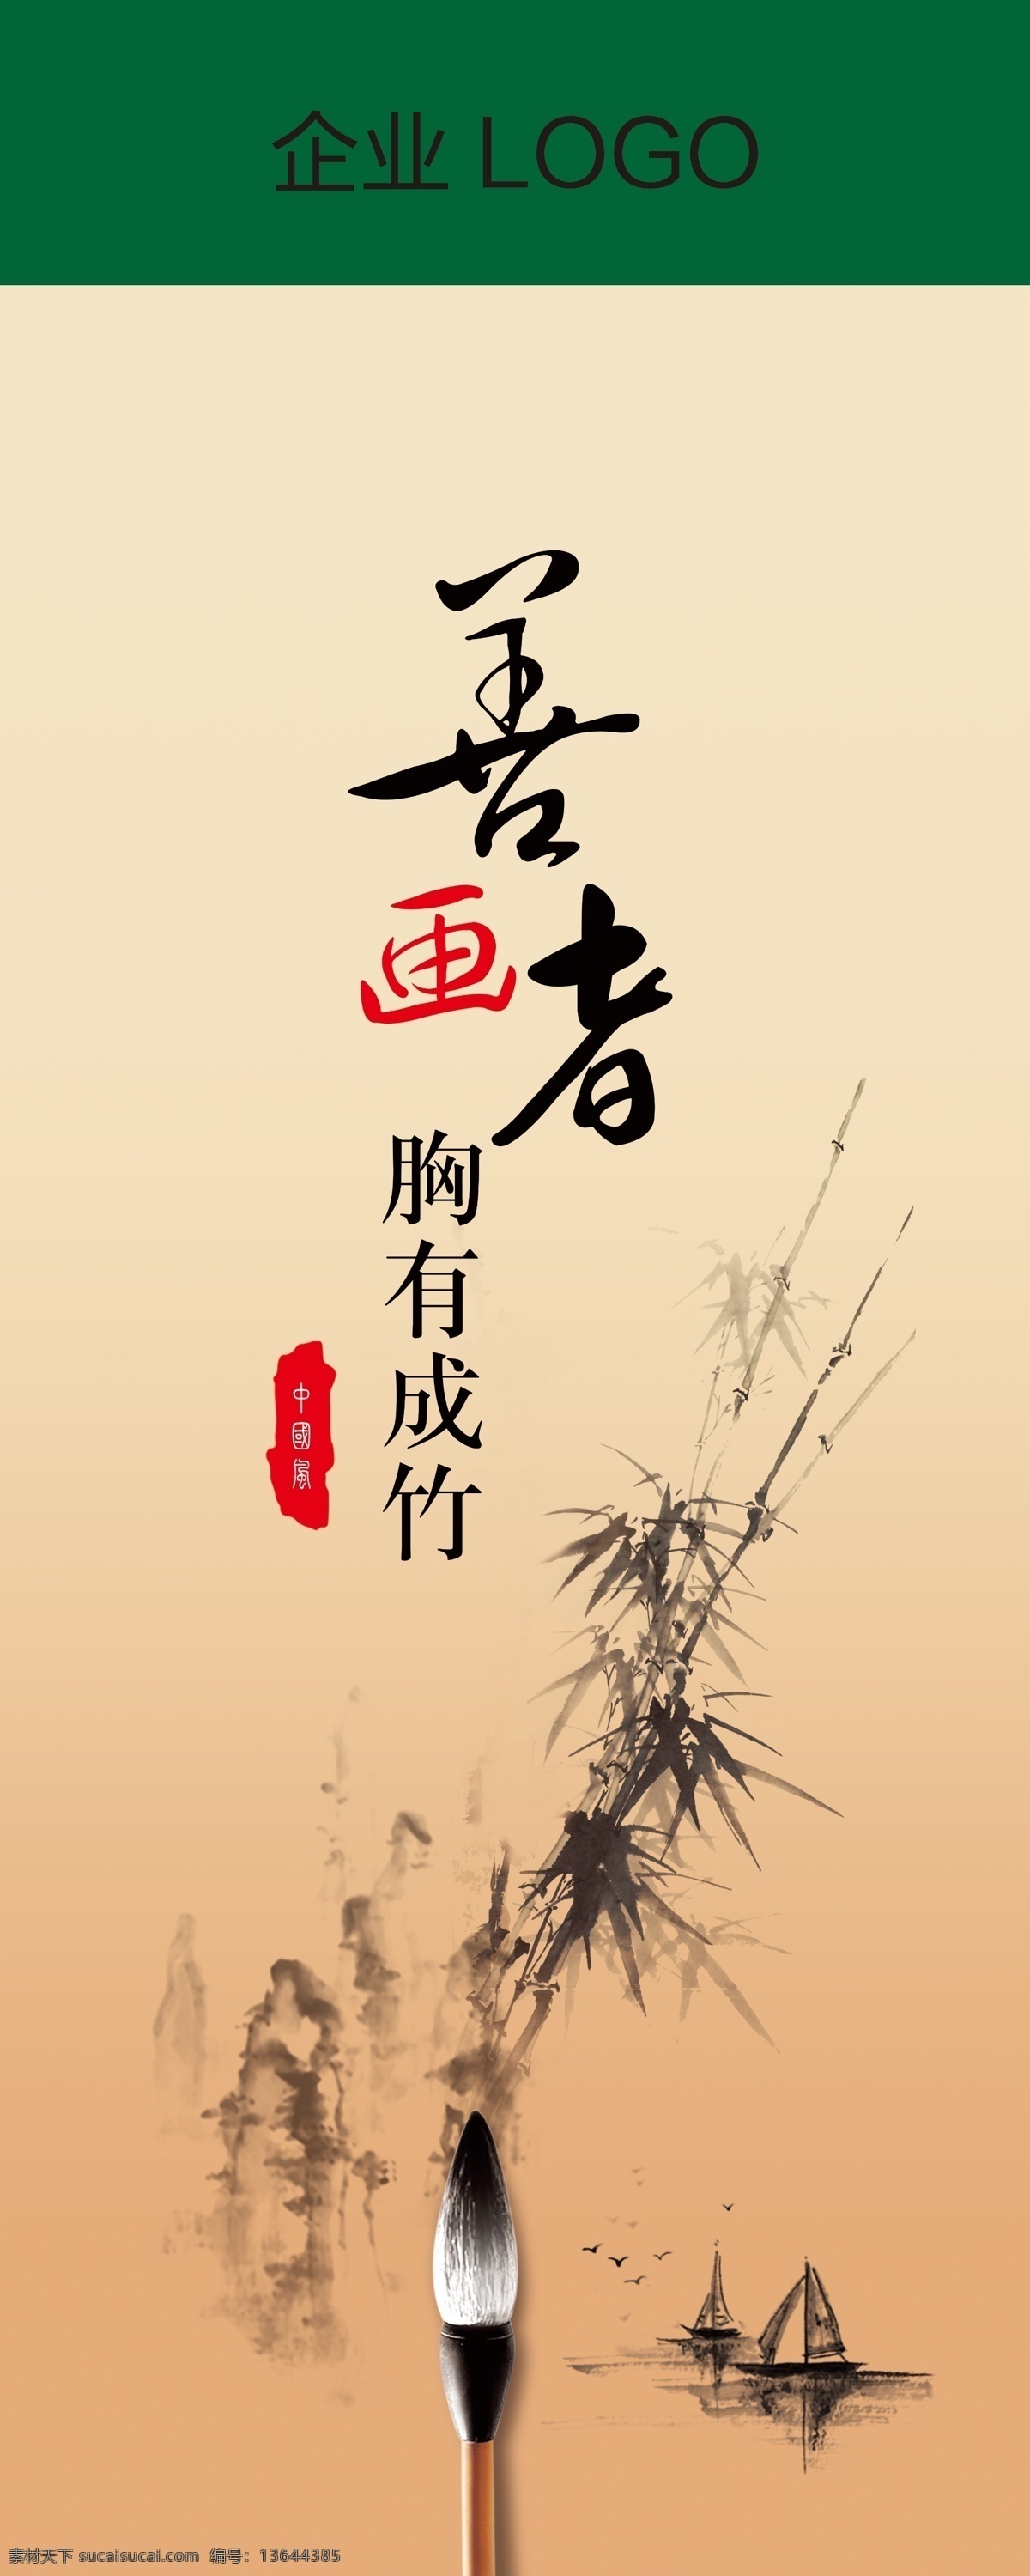 画的海报 中国风海报 中国风挂画 展厅雅装饰画 企业文化展板 水墨展板 人生八雅 东方八韵 秘境中的设计